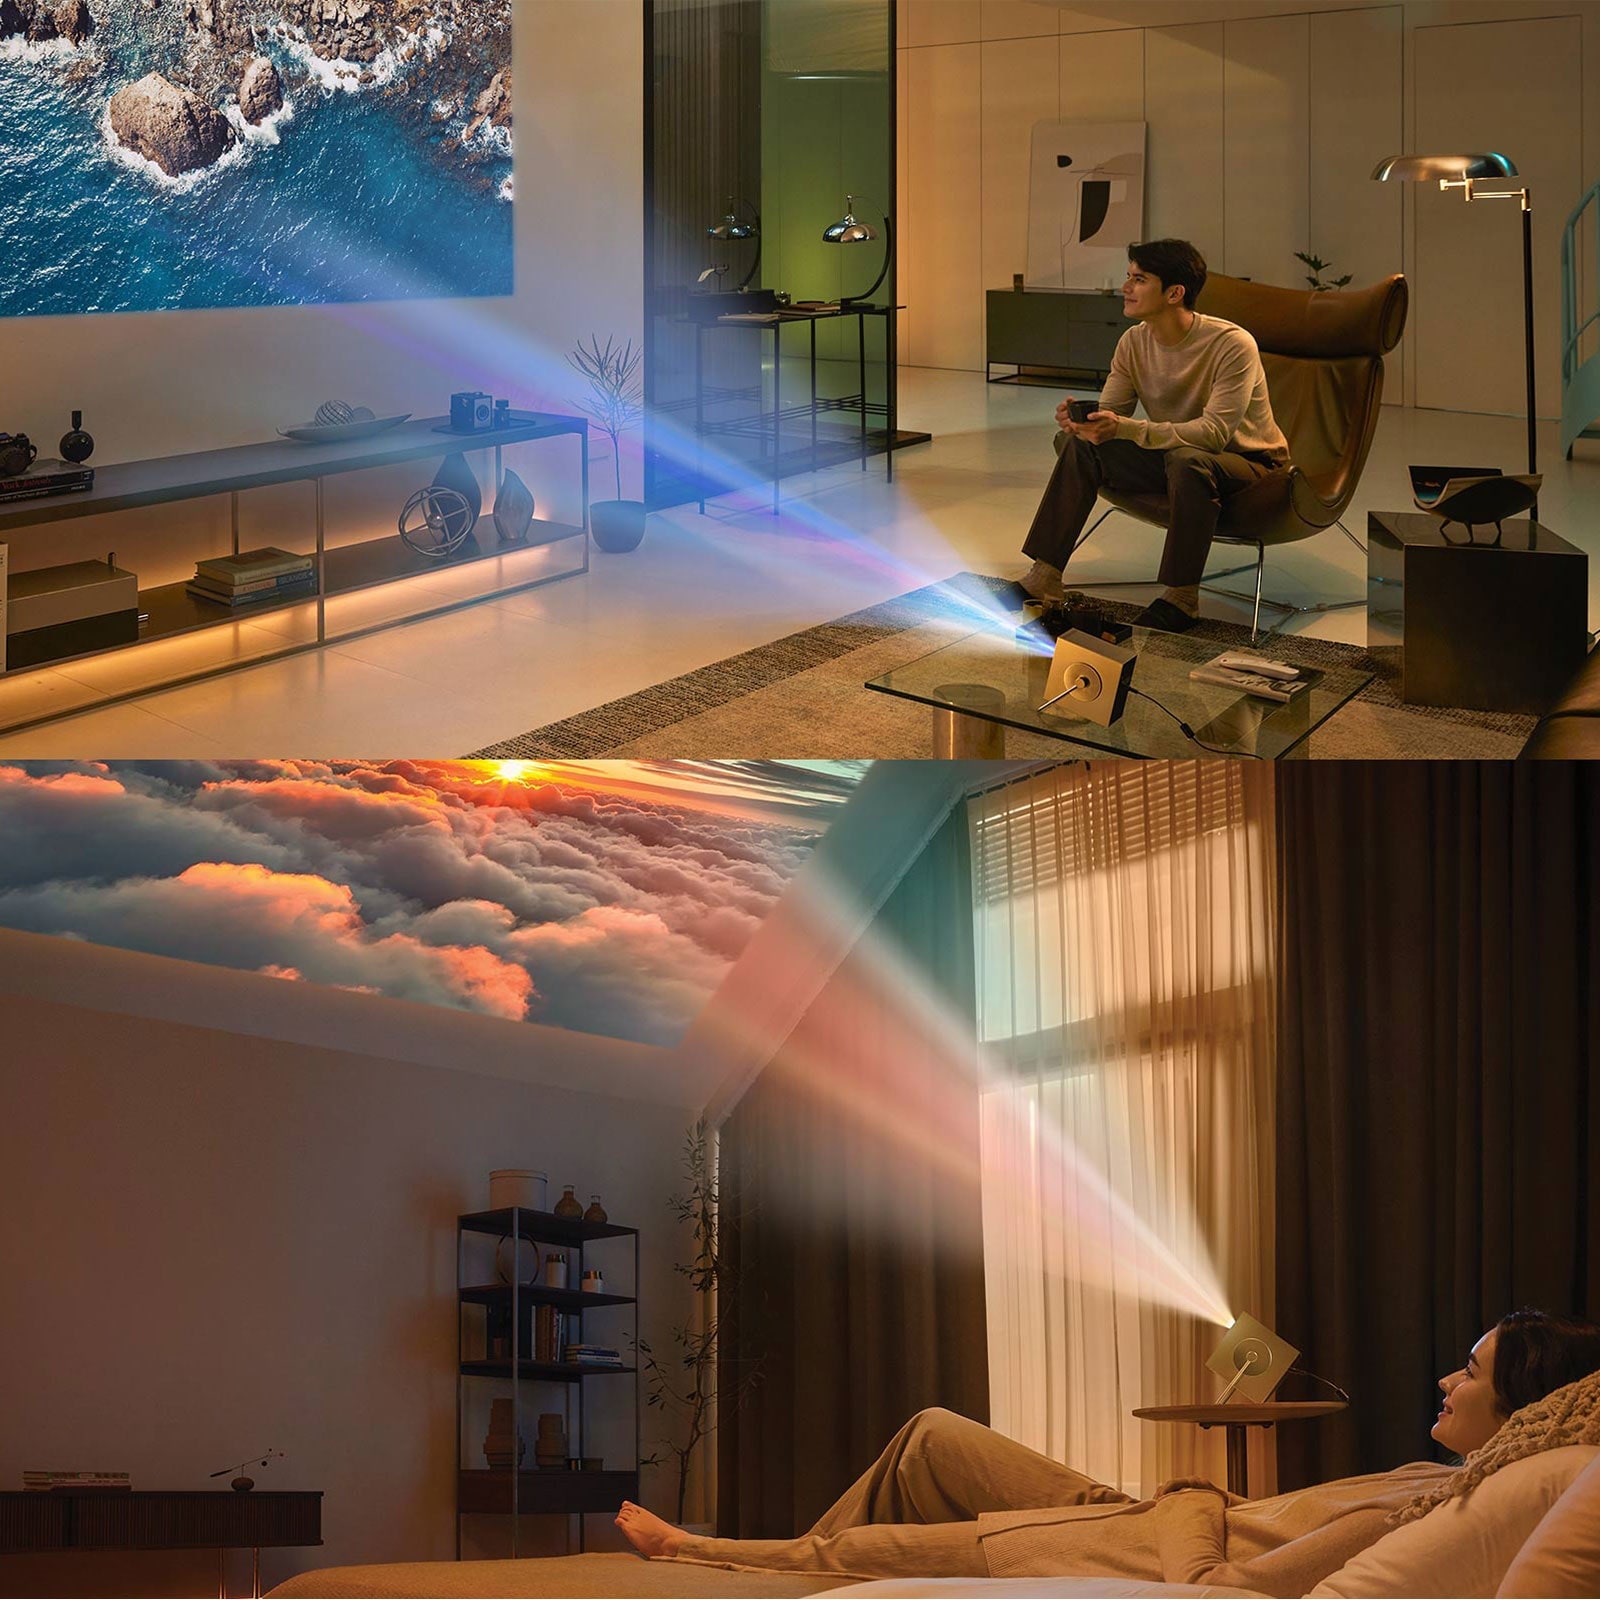 Bối cảnh sử dụng khác nhau của LG CineBeam HU710PB - phòng khách và phòng ngủ.